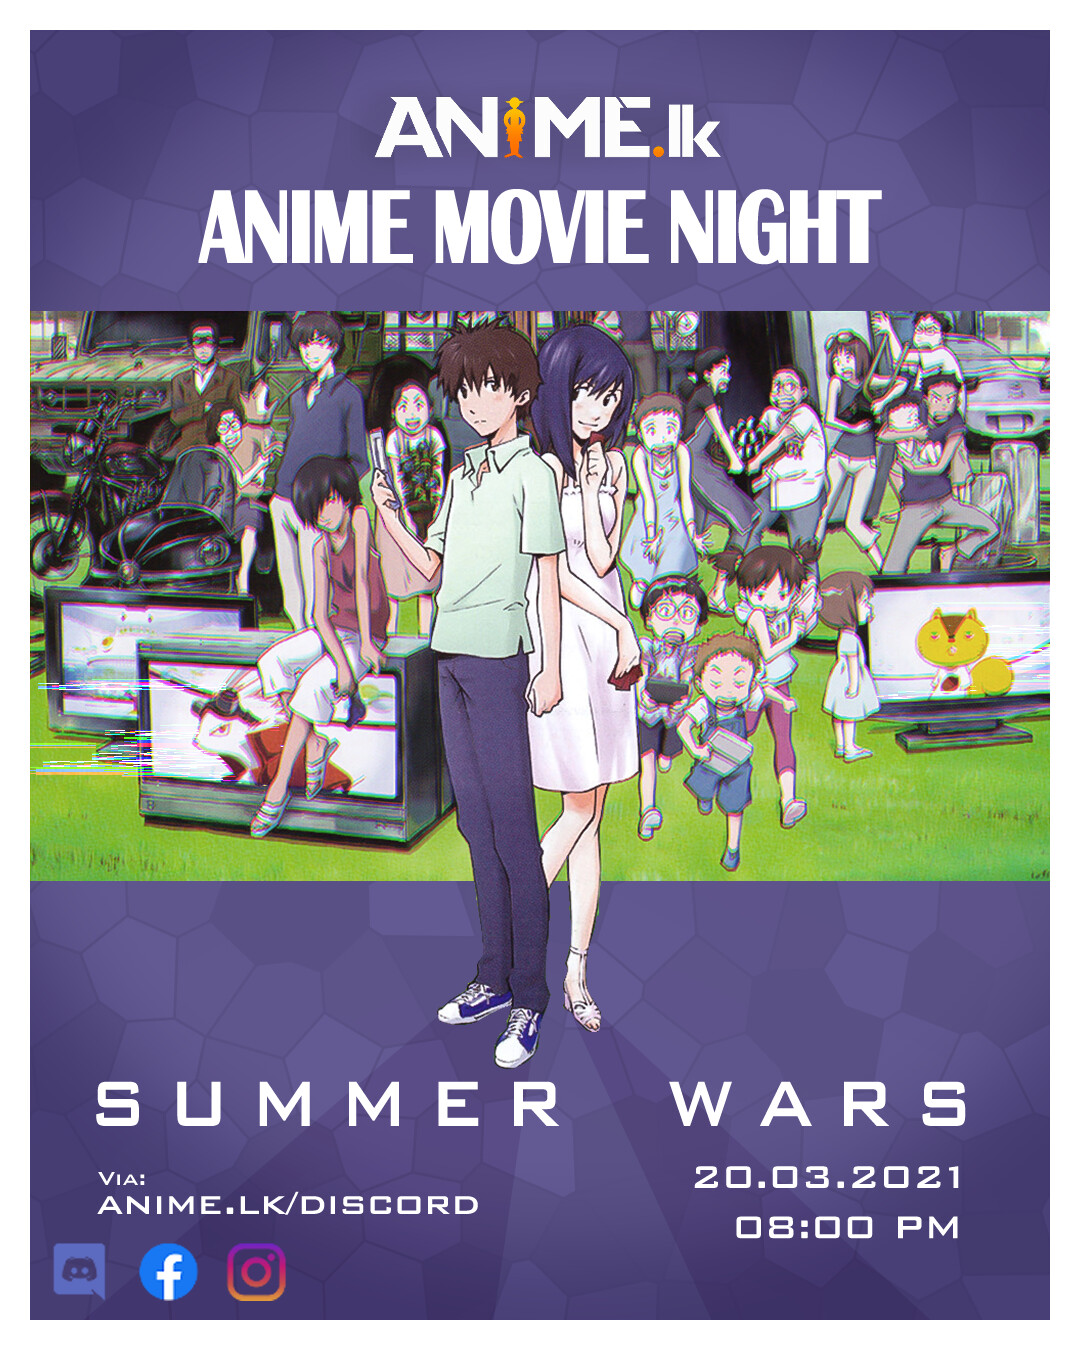 summer wars movie poster